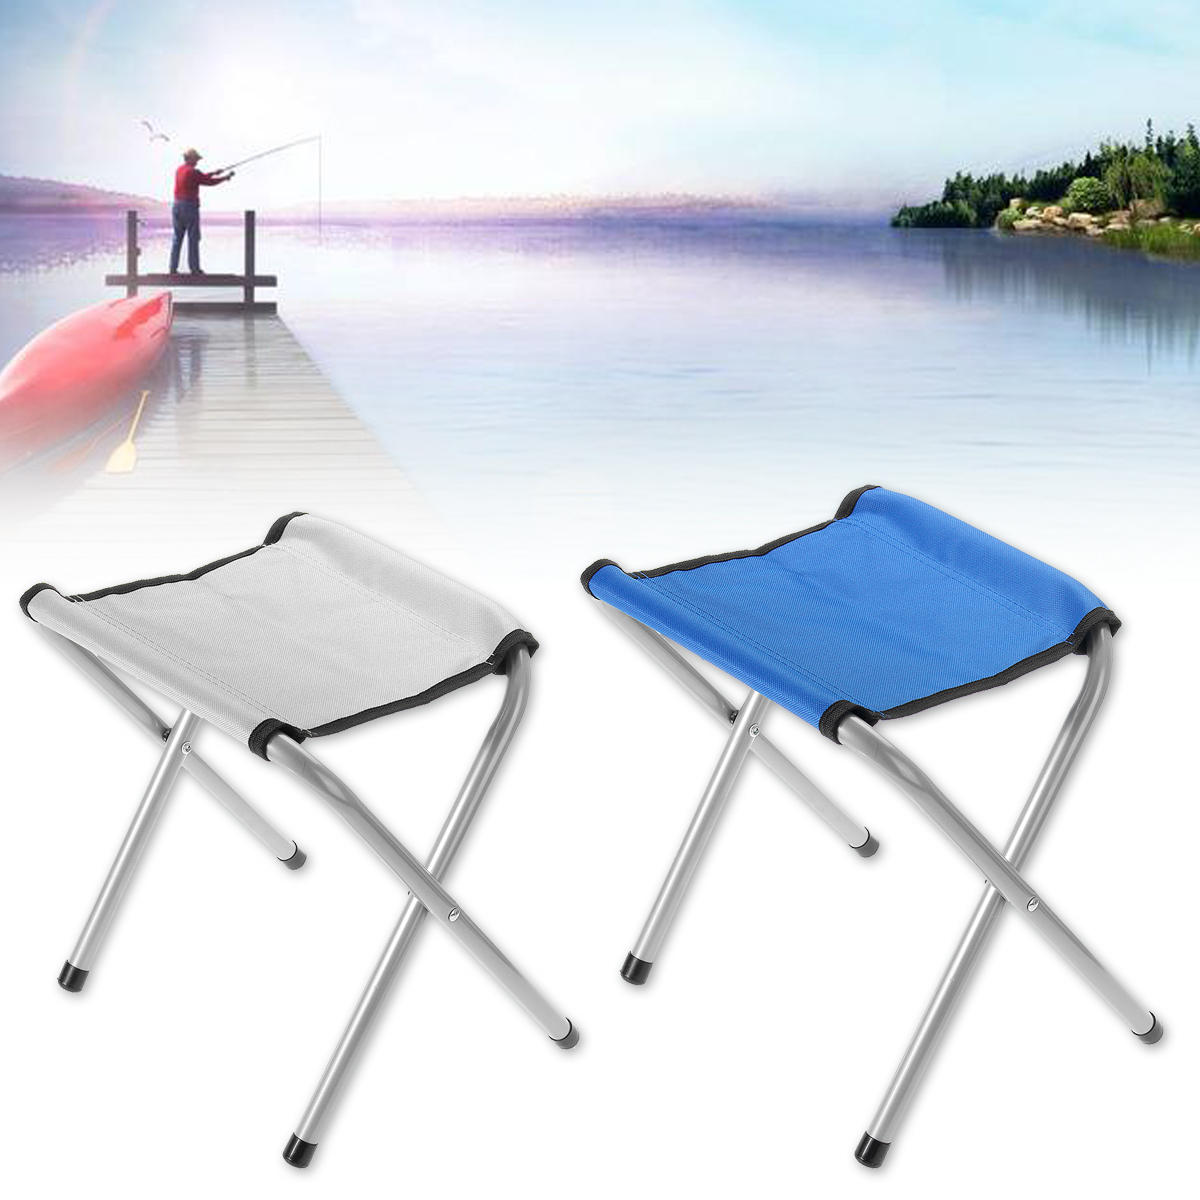 35 cm Przenośne składane krzesło ogrodowe Outdoor Traveling Camping Camping Fishing Fishing Beach BBQ Stool